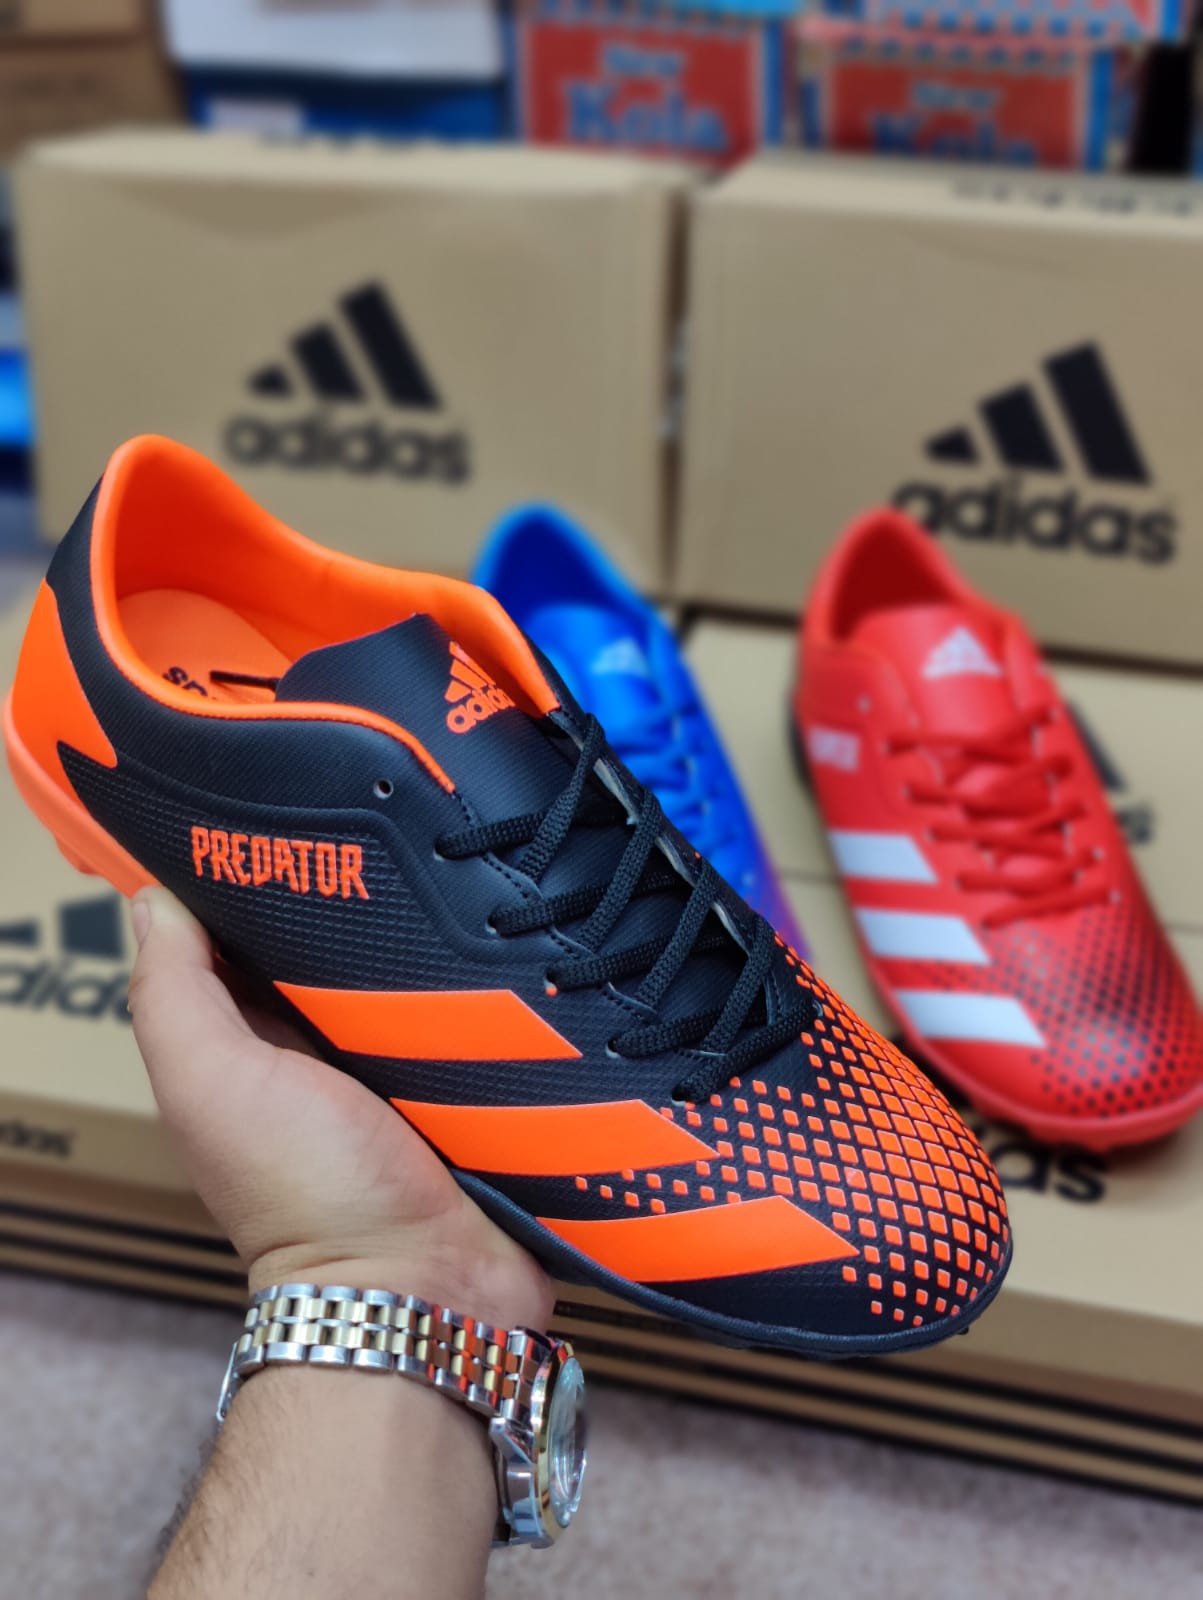 Adid - Football Boots - Black Orange